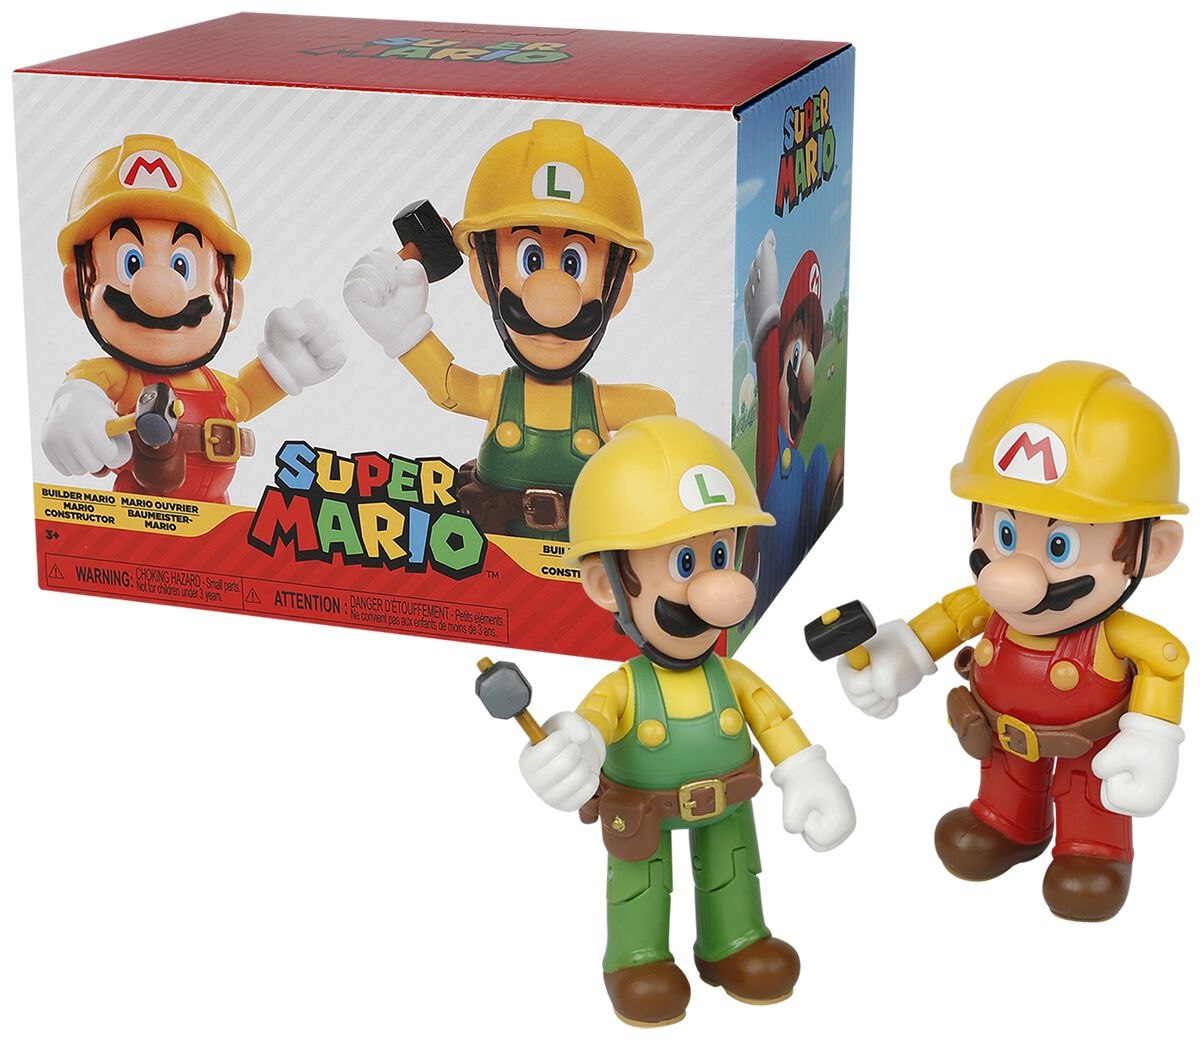 Super Mario Mario and Luigi - Maker Collection Figures multicolor